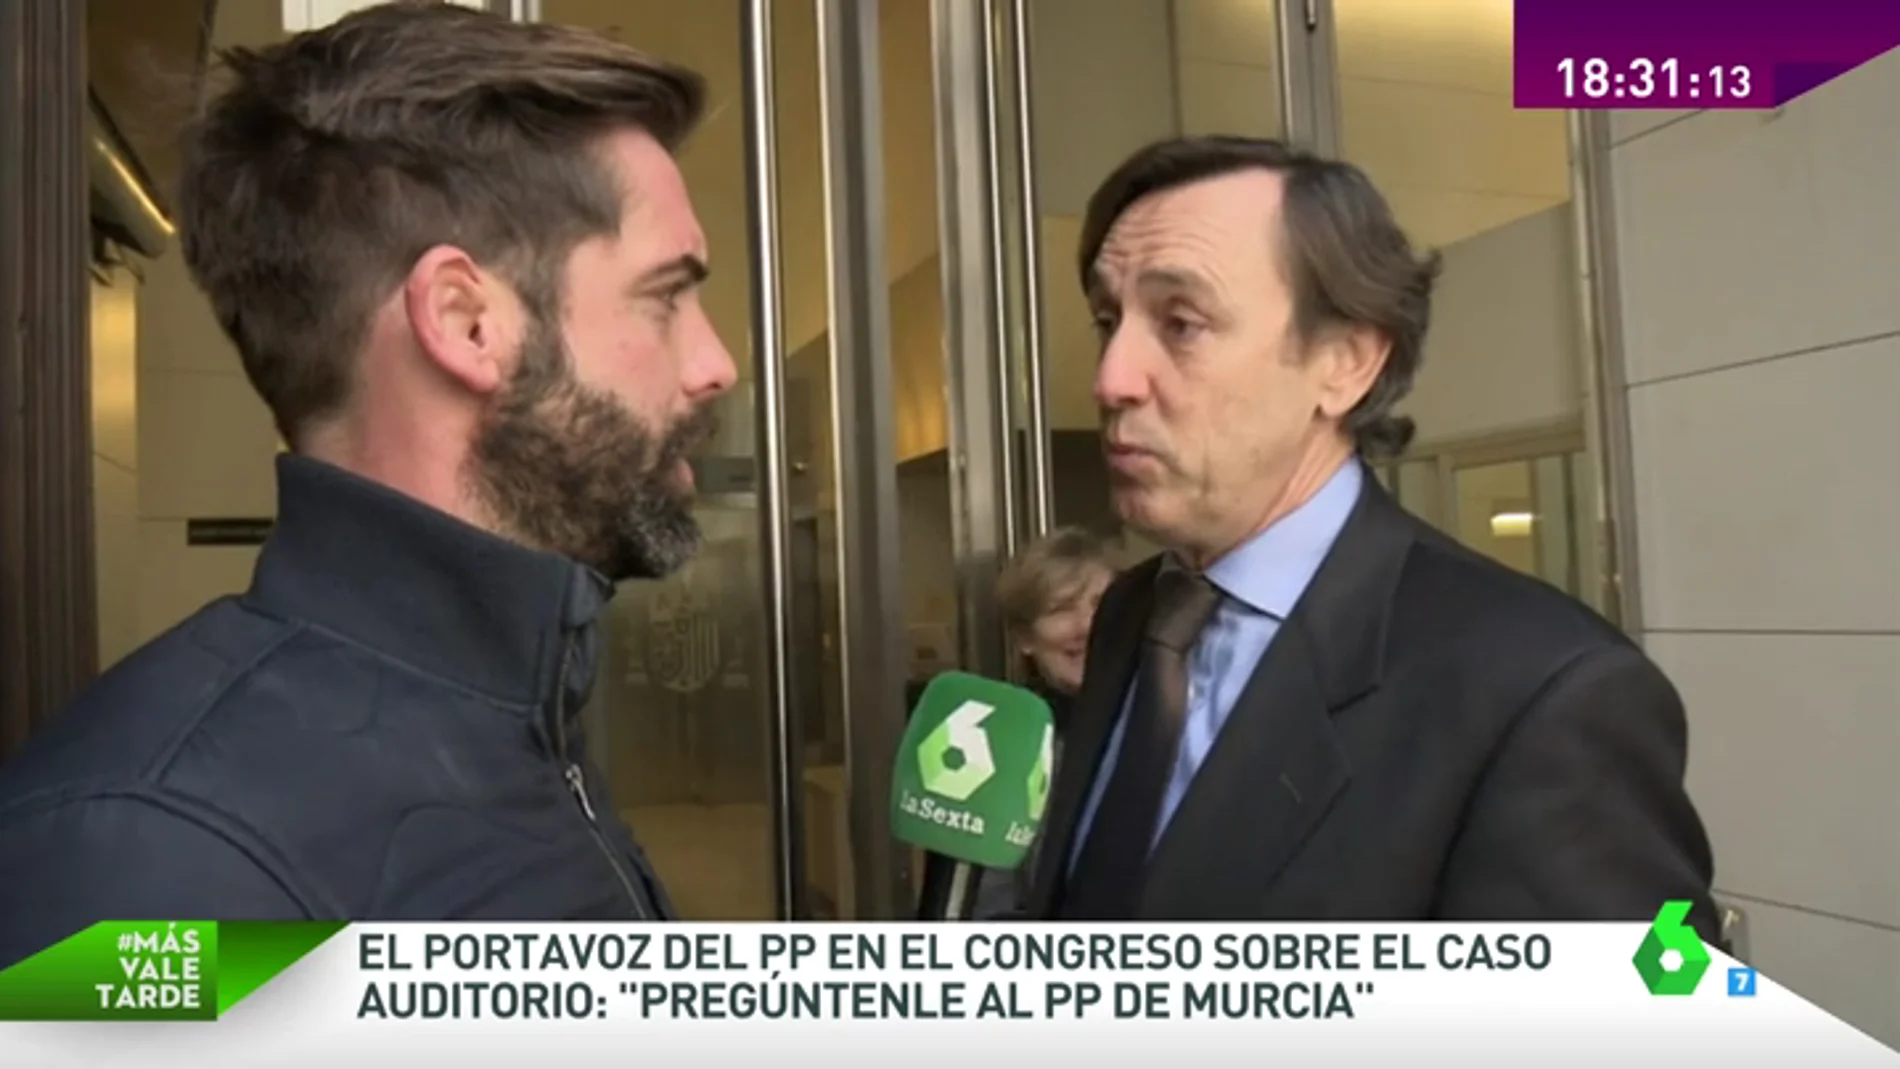 Frame 57.410837 de: El portavoz del PP en el Congreso, sobre el 'caso Auditorio': "Pregúntenle al PP de Murcia"